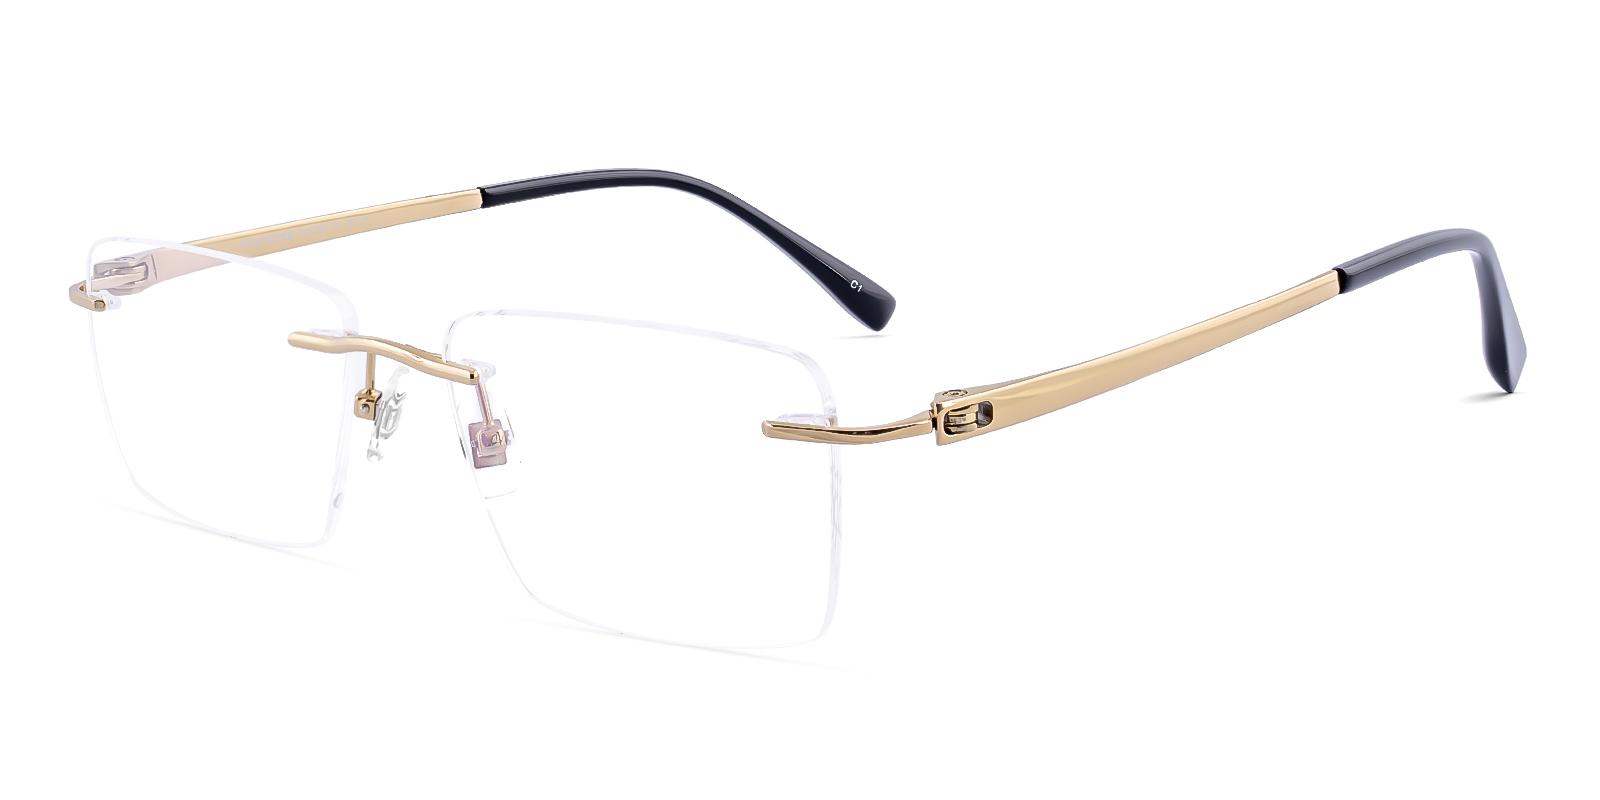 Tornitude Gold Titanium Eyeglasses , NosePads Frames from ABBE Glasses